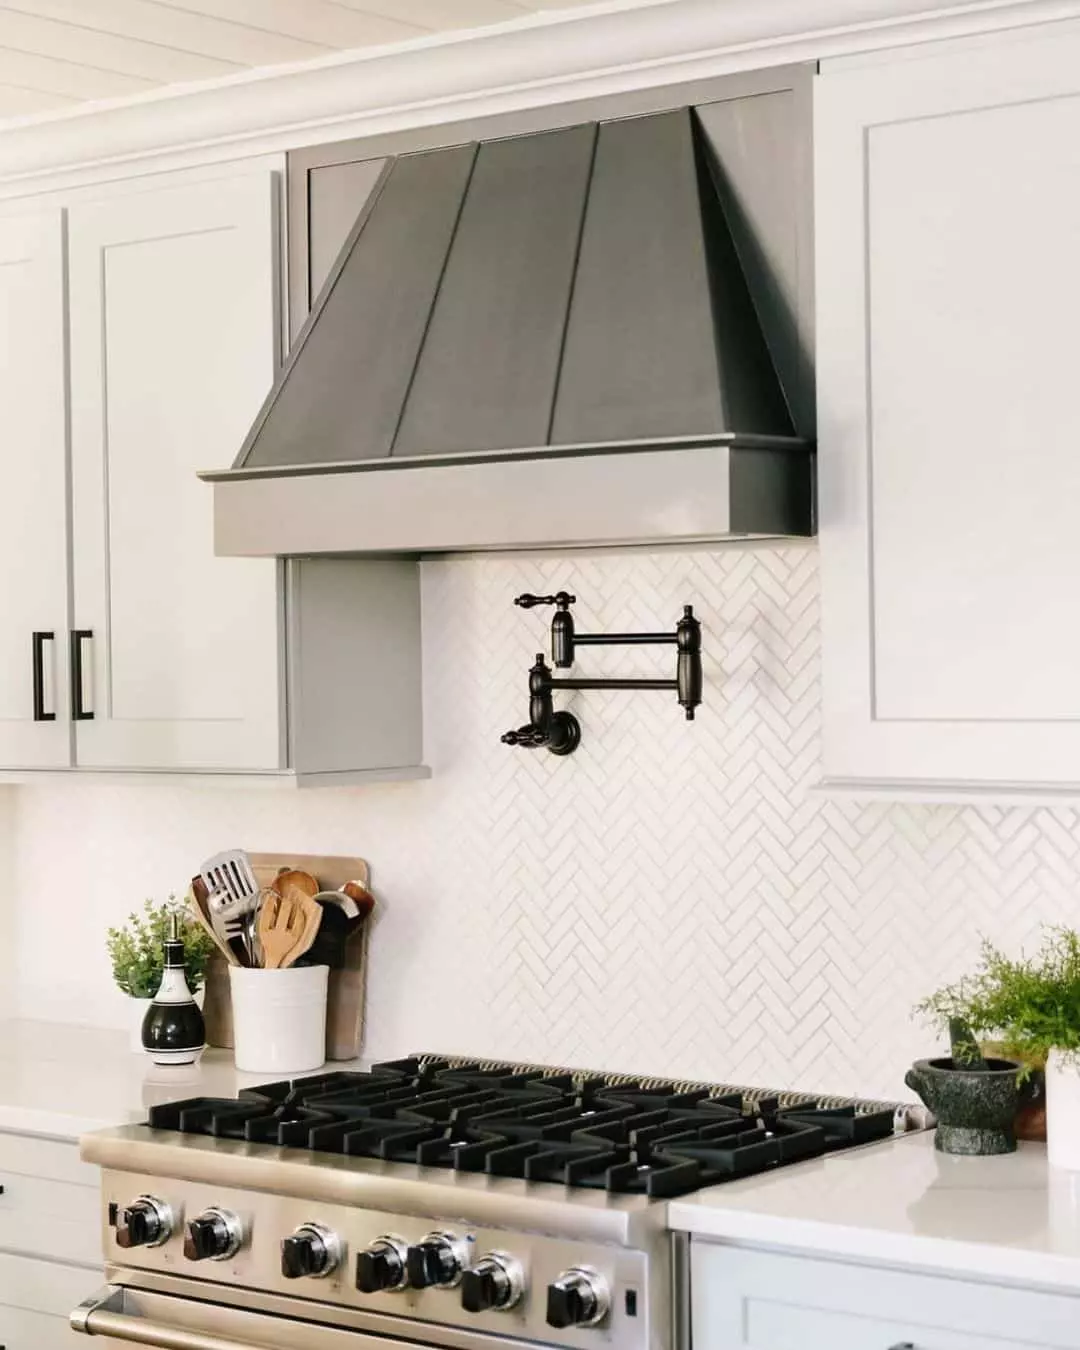 White Herringbone Backsplash Tile Ideas; Modern white herringbone tile ideas. Minimalistic and geometric tiles for your kitchen backsplash!